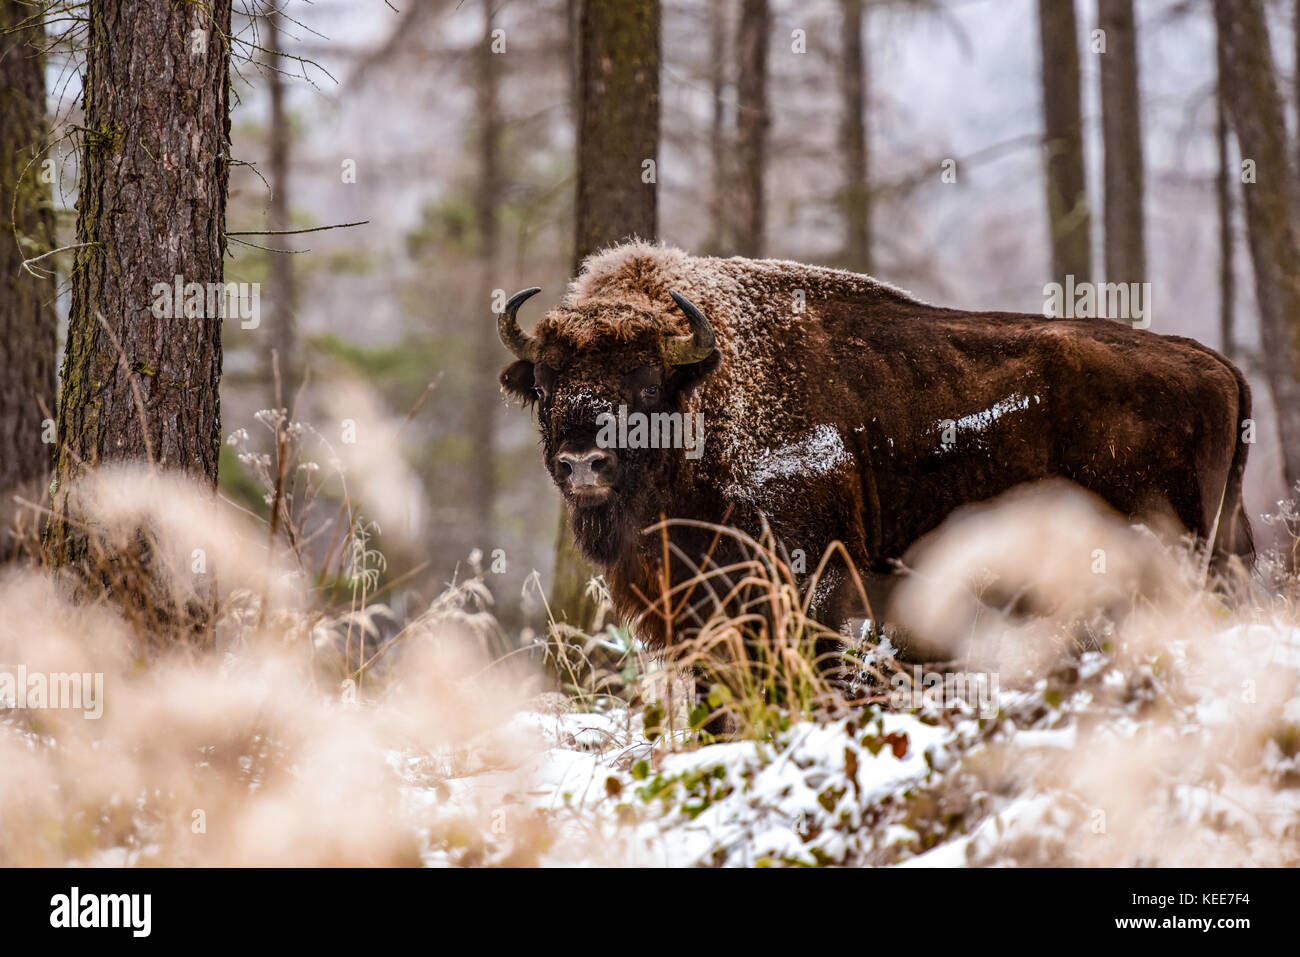 Bison, bison d'Europe (Bison bonasus) dans la forêt d'hiver Banque D'Images